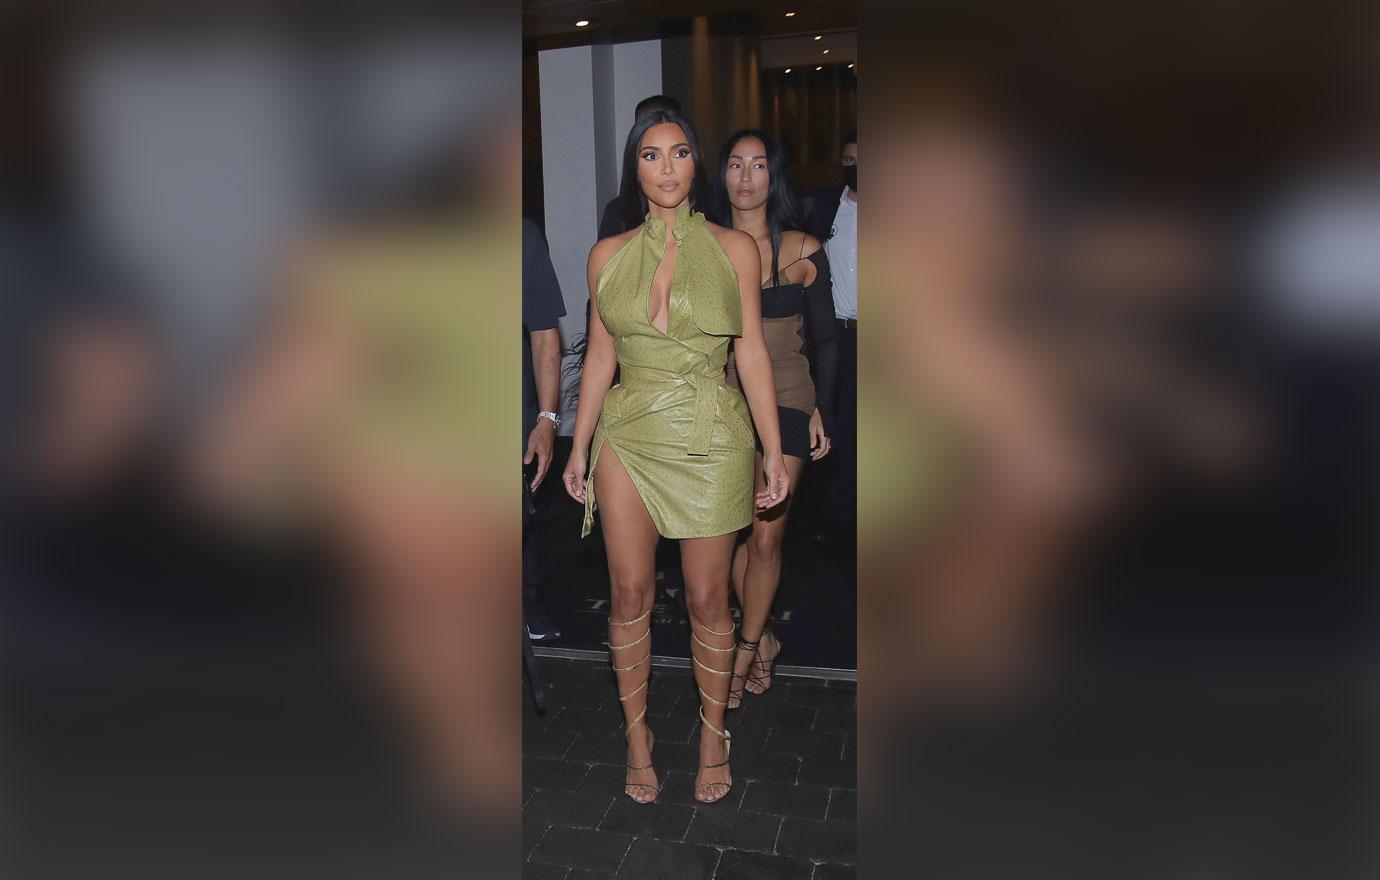 Kim Kardashian's Miami Dress - See Kim's WILD Miami Outfits Here